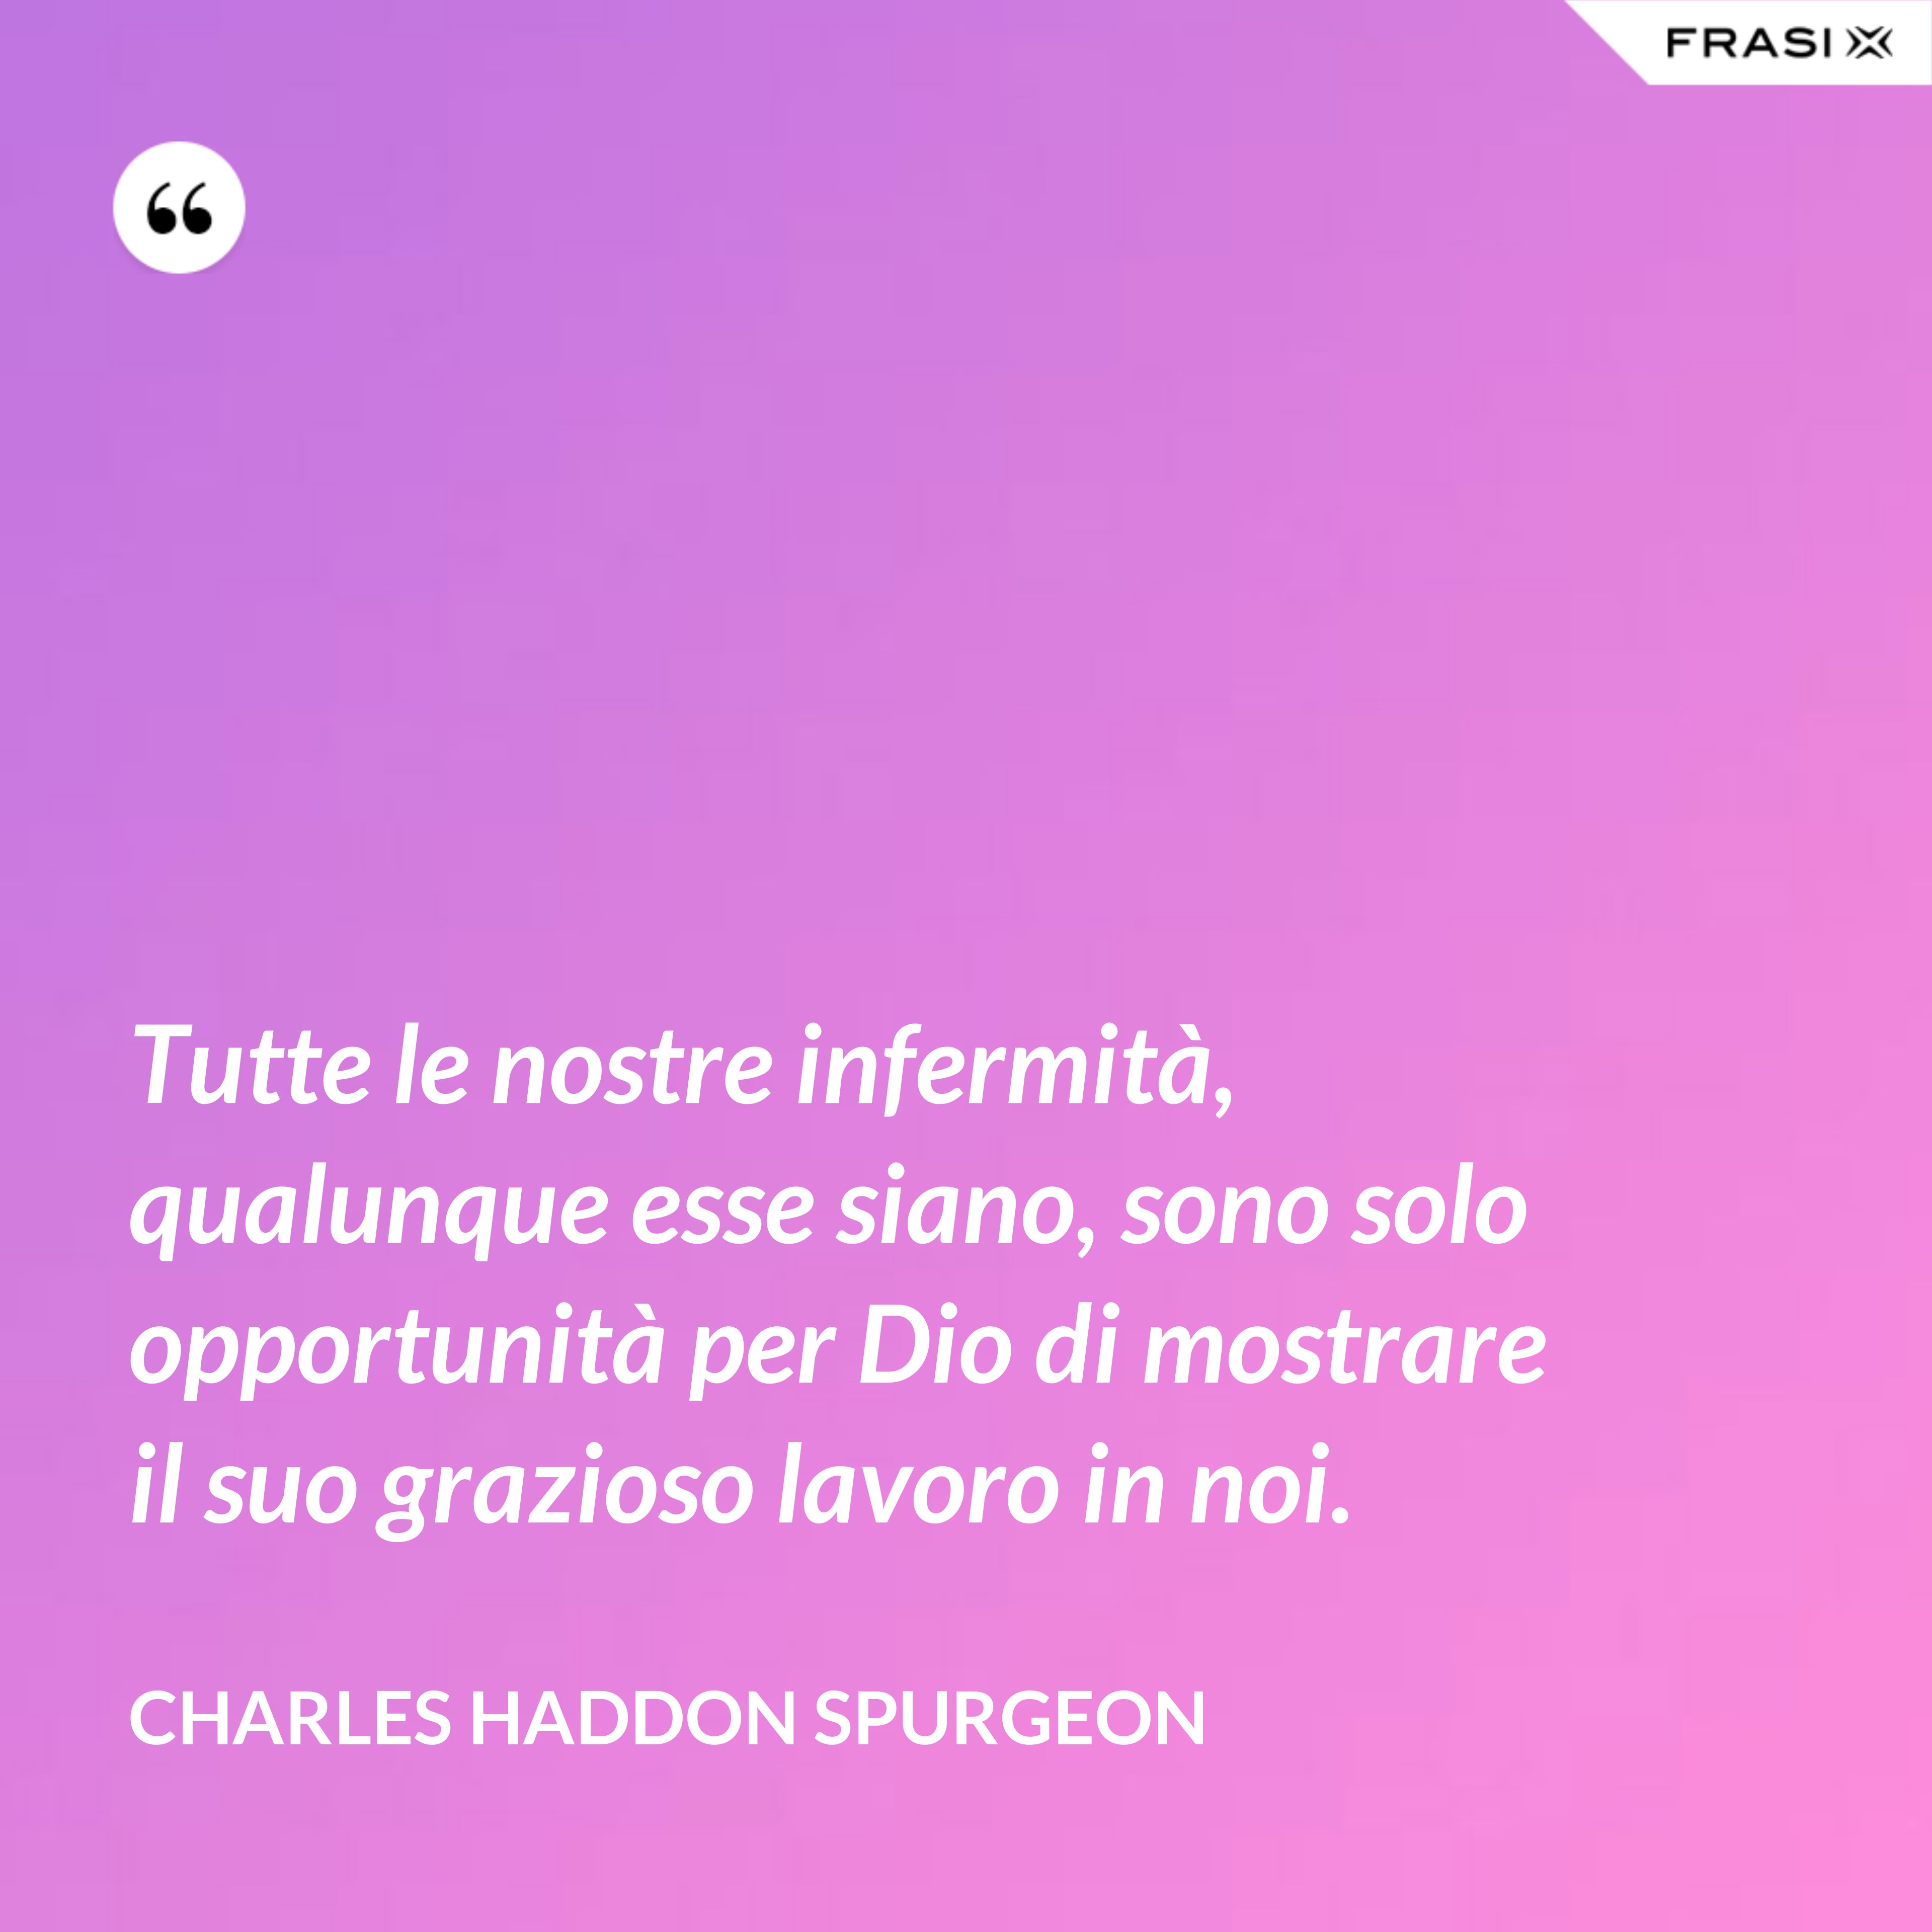 Tutte le nostre infermità, qualunque esse siano, sono solo opportunità per Dio di mostrare il suo grazioso lavoro in noi. - Charles Haddon Spurgeon